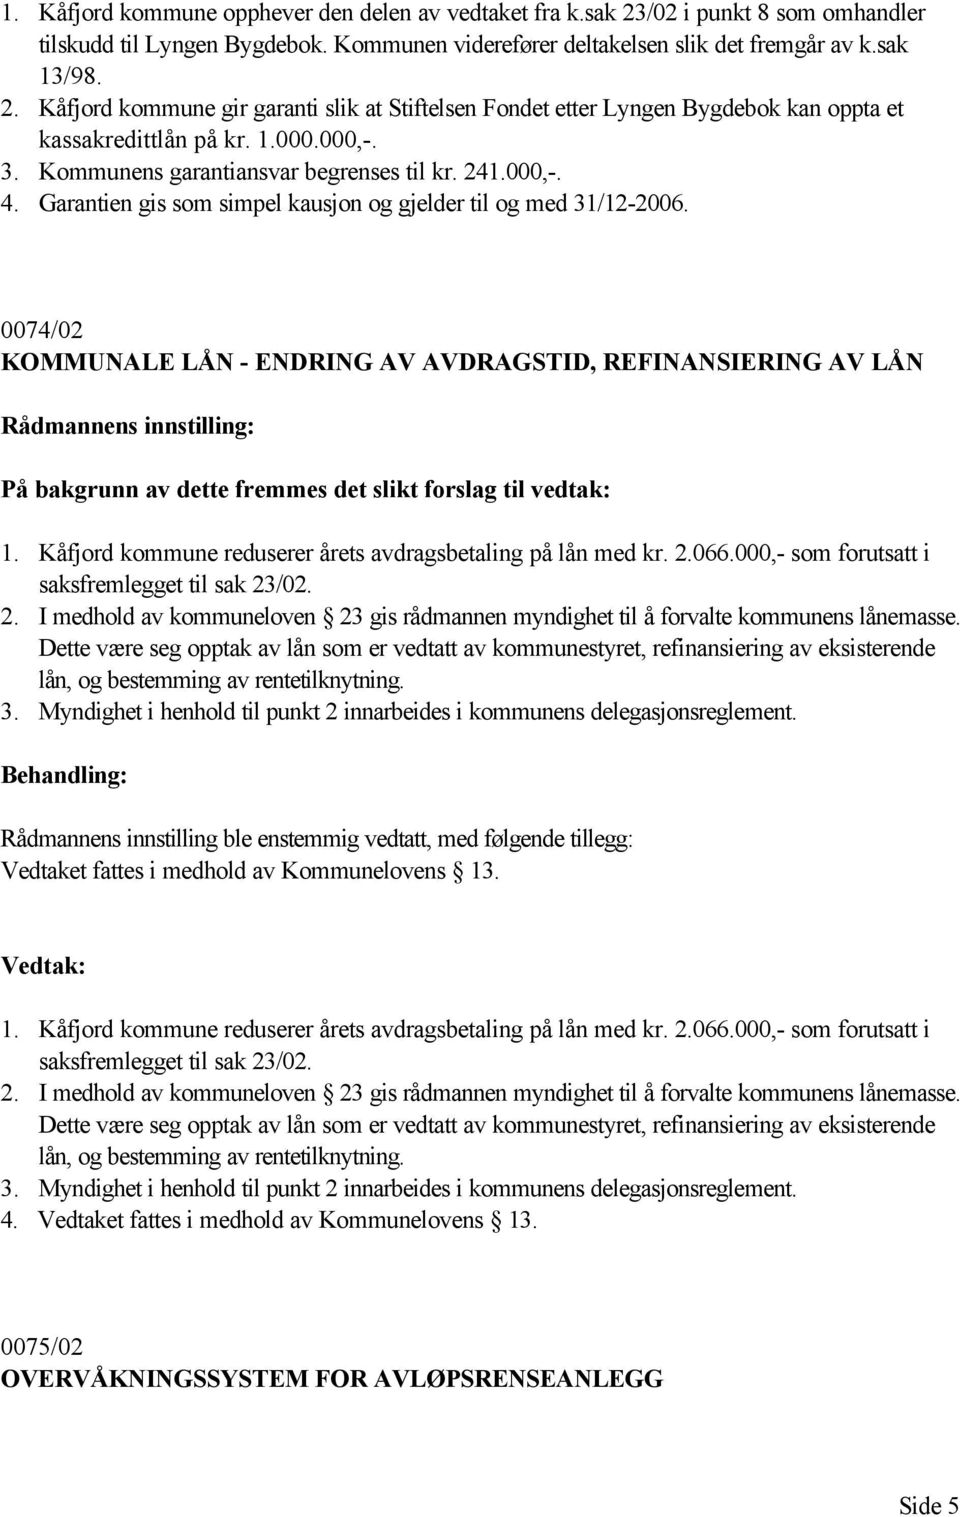 0074/02 KOMMUNALE LÅN - ENDRING AV AVDRAGSTID, REFINANSIERING AV LÅN På bakgrunn av dette fremmes det slikt forslag til vedtak: 1. Kåfjord kommune reduserer årets avdragsbetaling på lån med kr. 2.066.